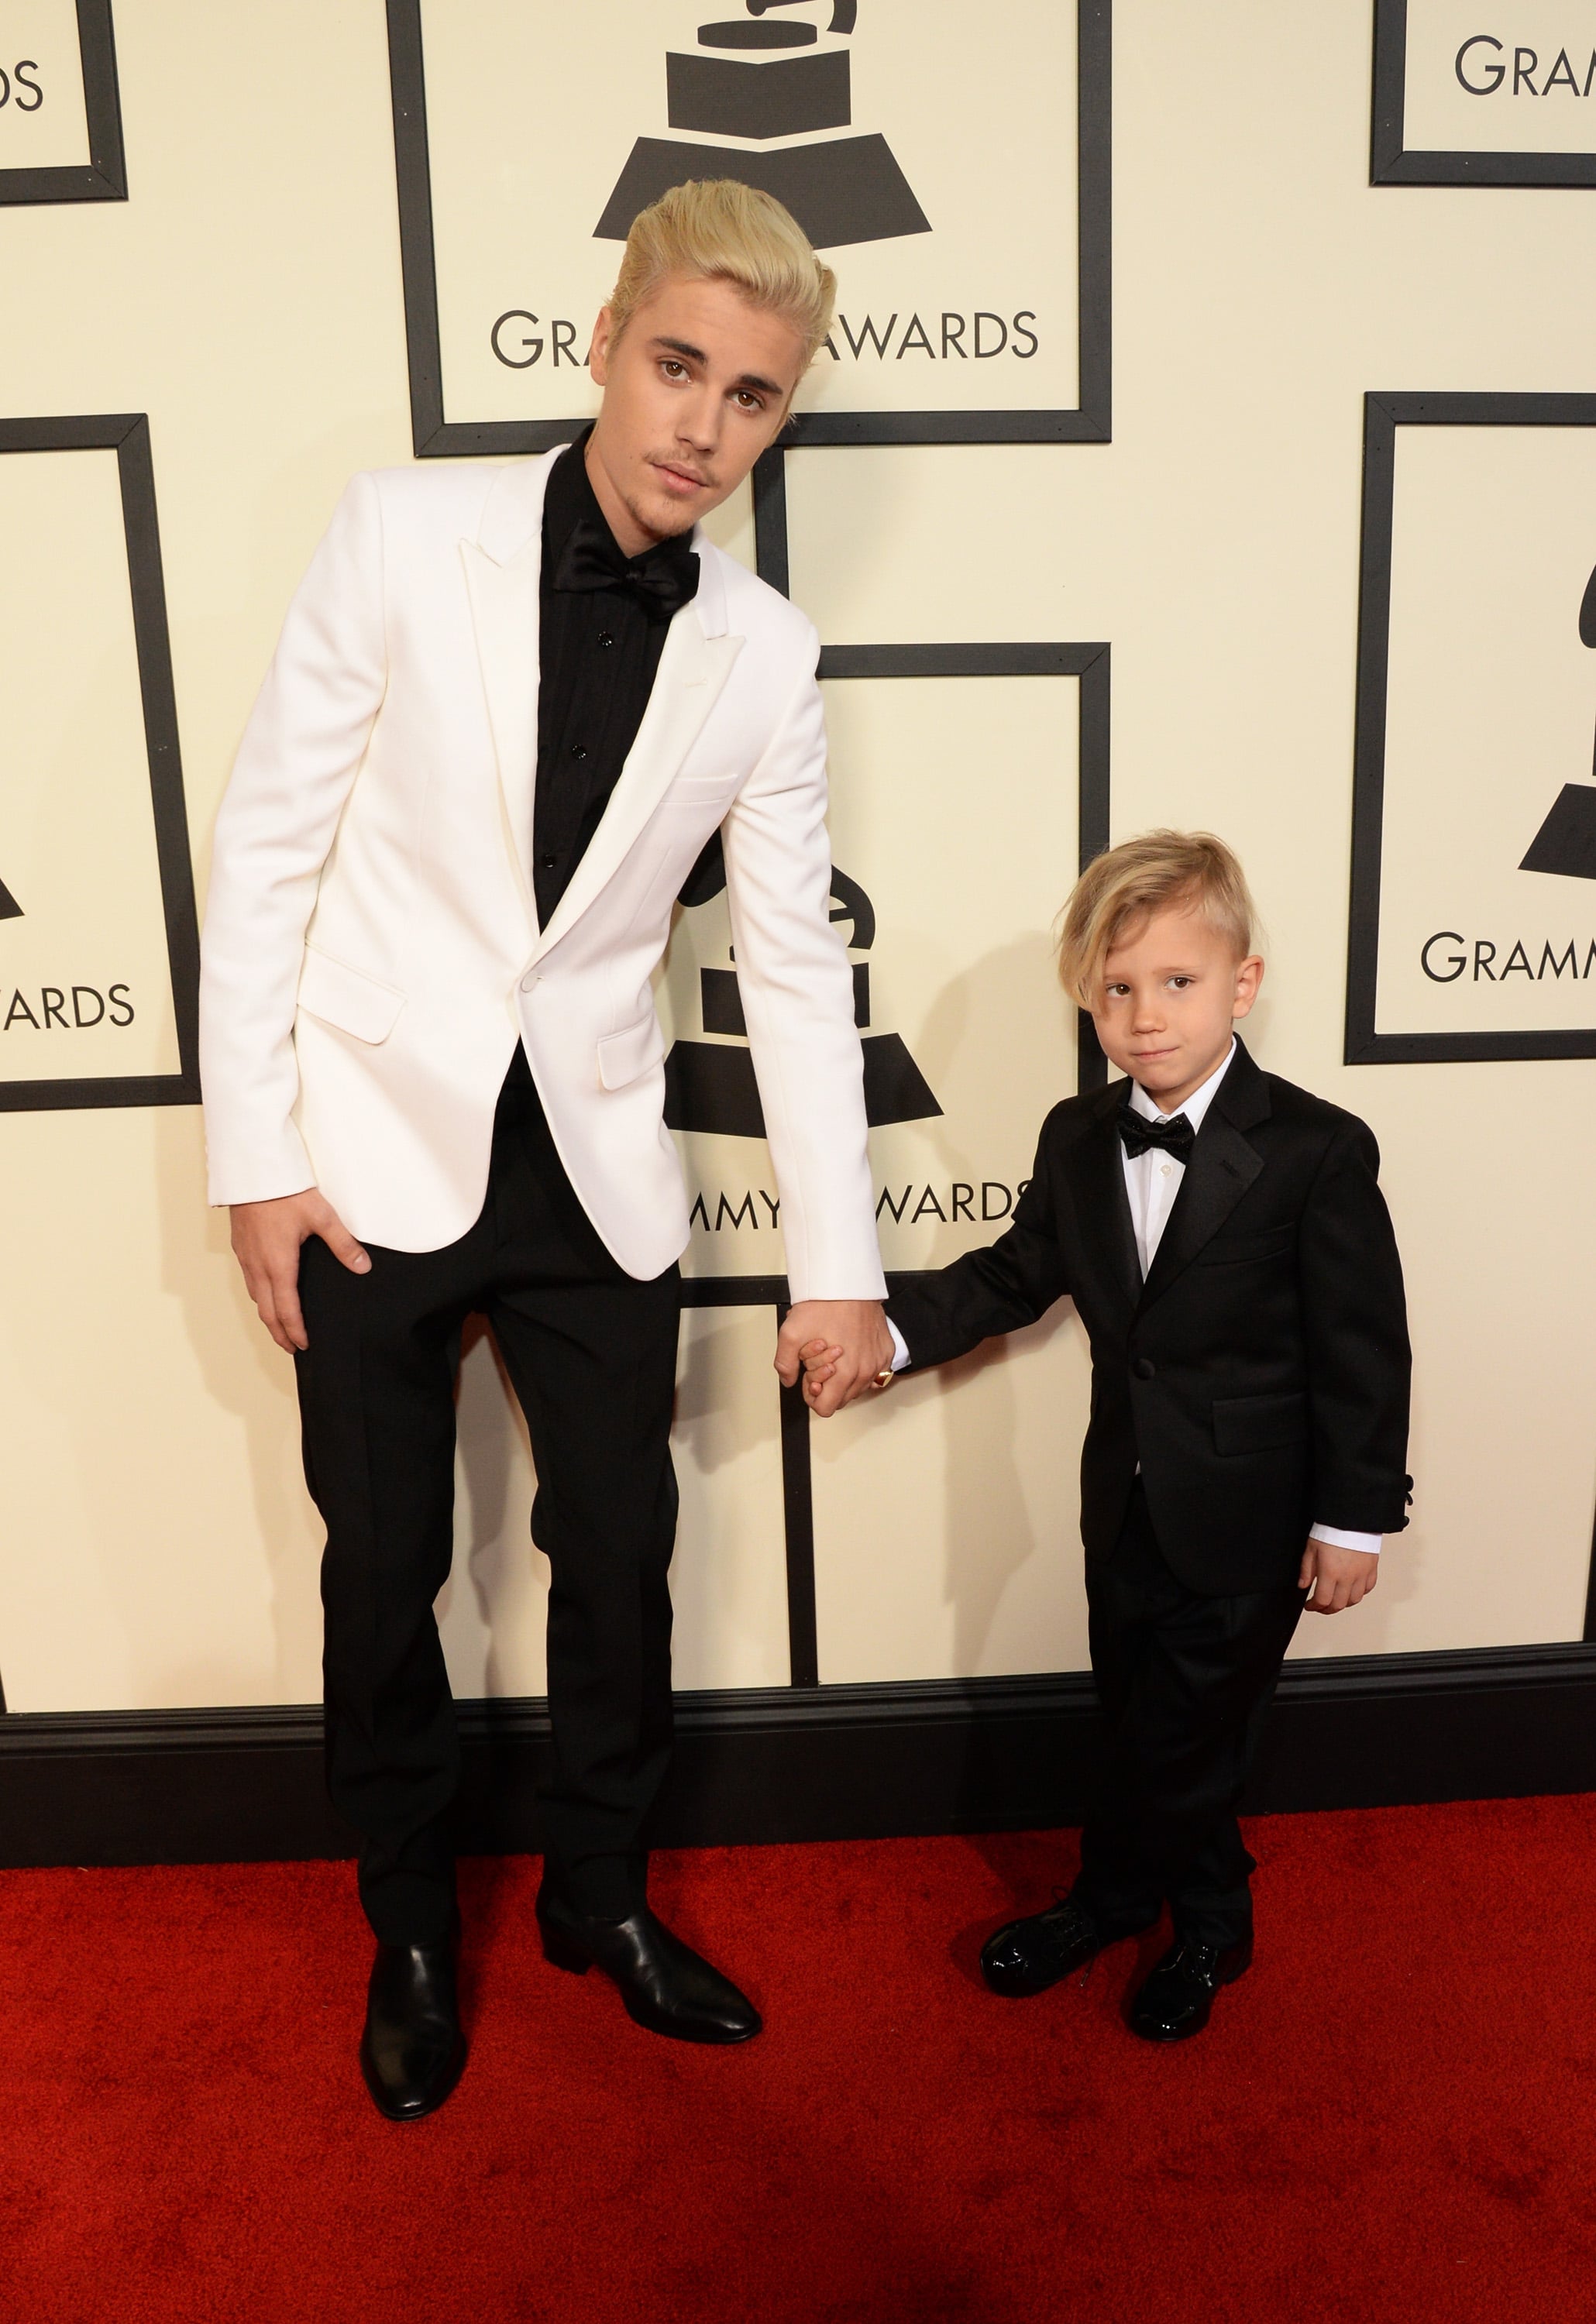 Justin Bieber Wins First Grammy, Brings Little Brother to Show!: Photo  3579486, 2016 Grammys, Grammys, Jaxon Bieber, Justin Bieber Photos